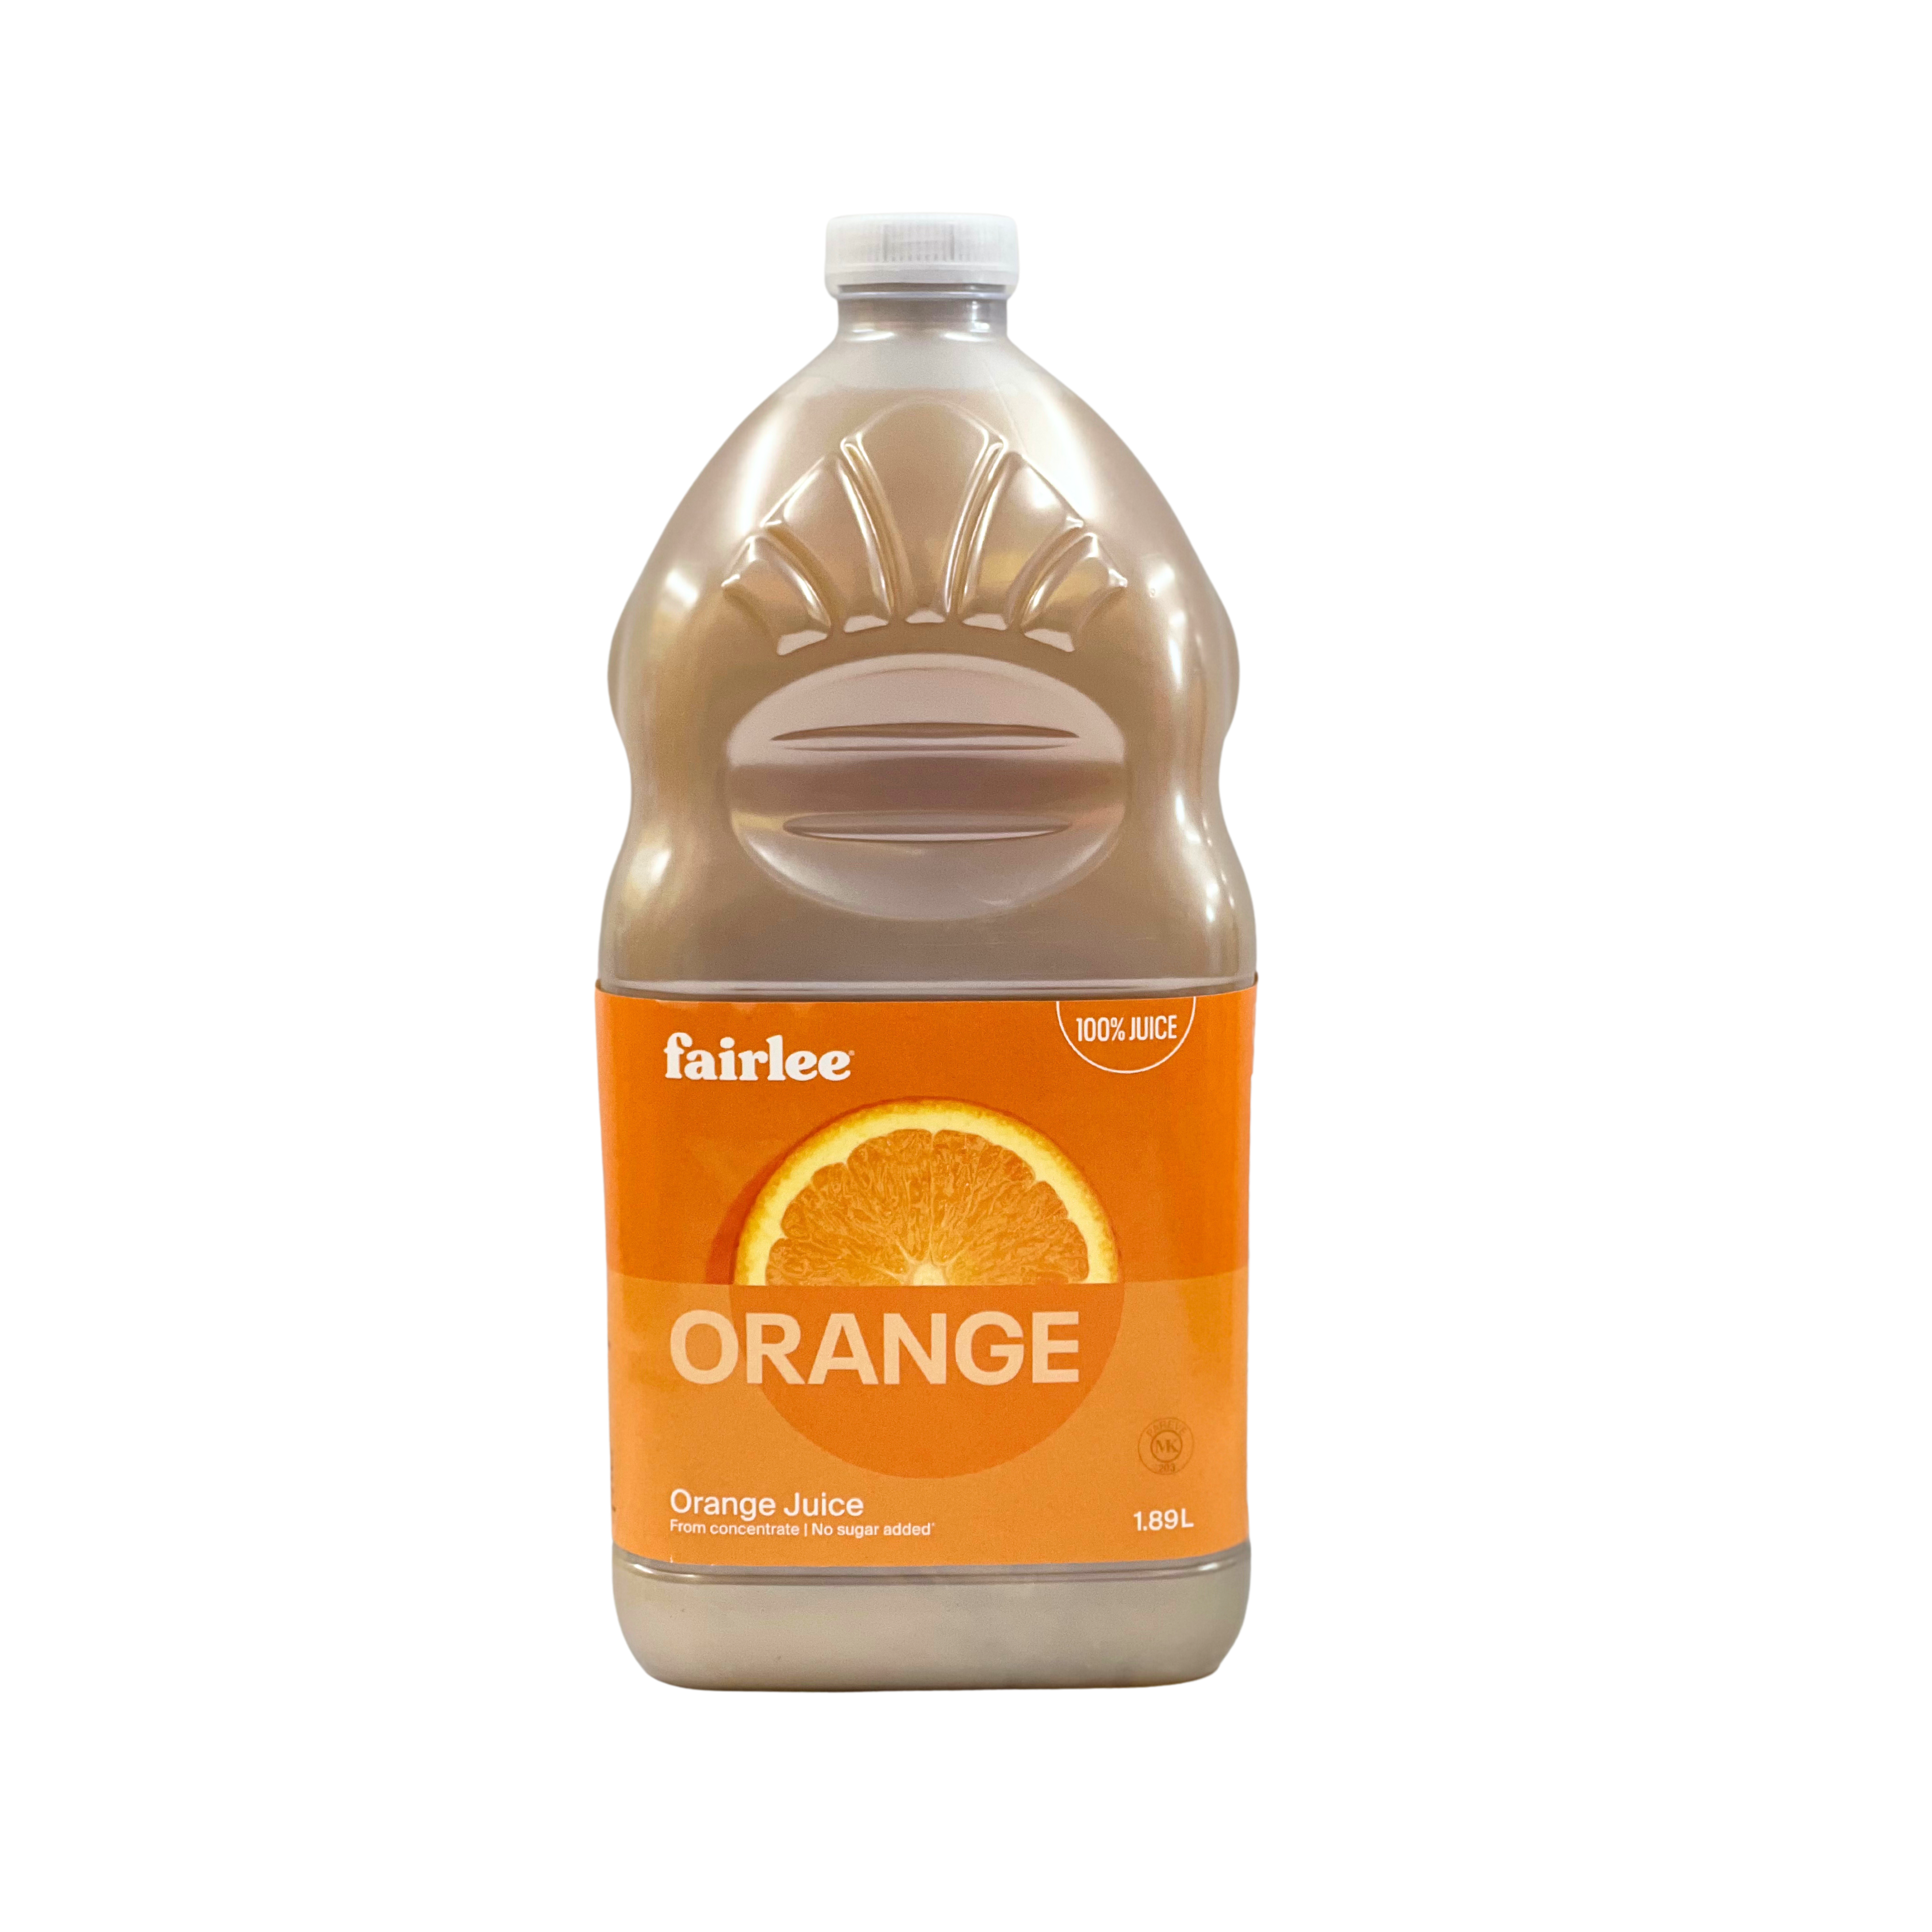 Fairlee Orange Juice 1.89L